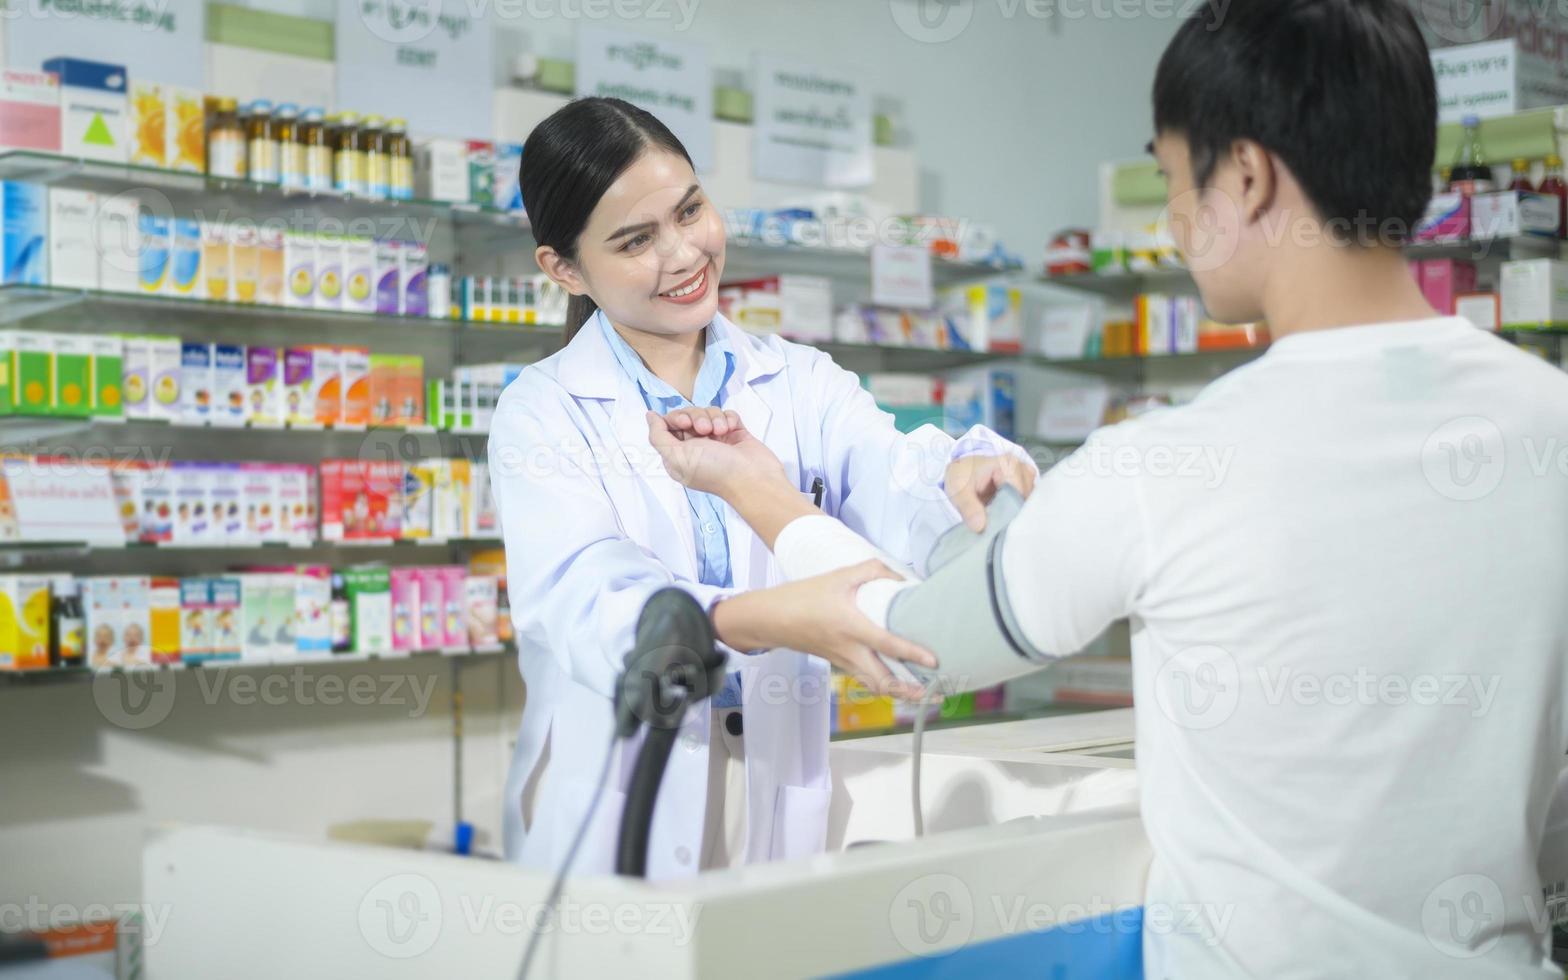 vrouwelijke apotheker die klant adviseert over drugsgebruik in een moderne apotheekdrogisterij. foto